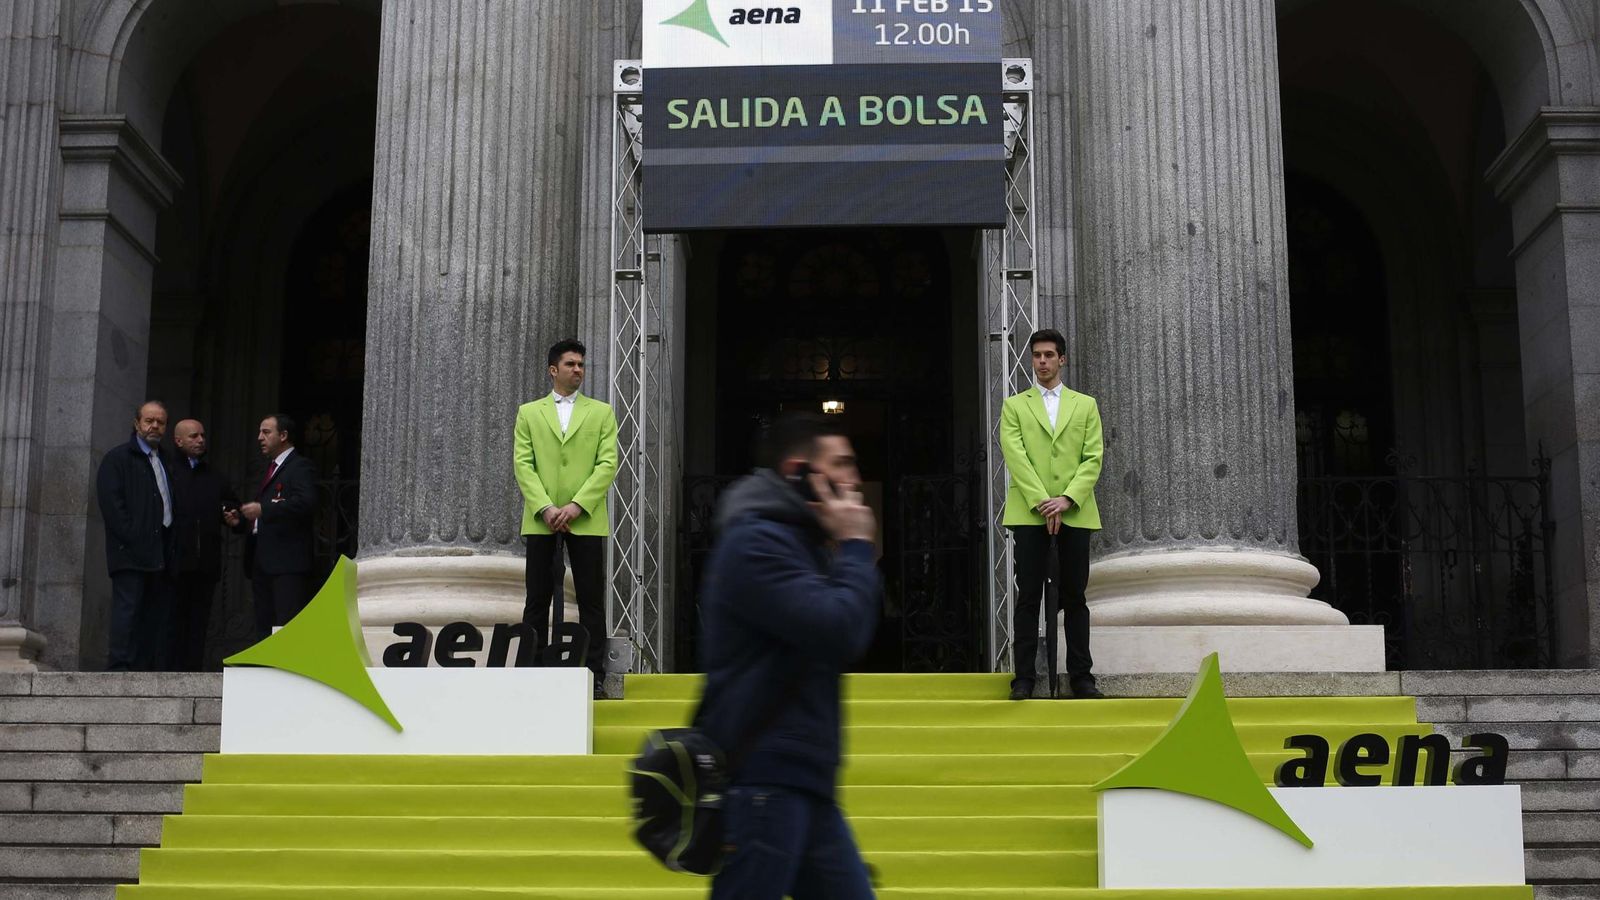 Foto: Imagen del día de la salida a Bolsa de Aena. (Reuters)